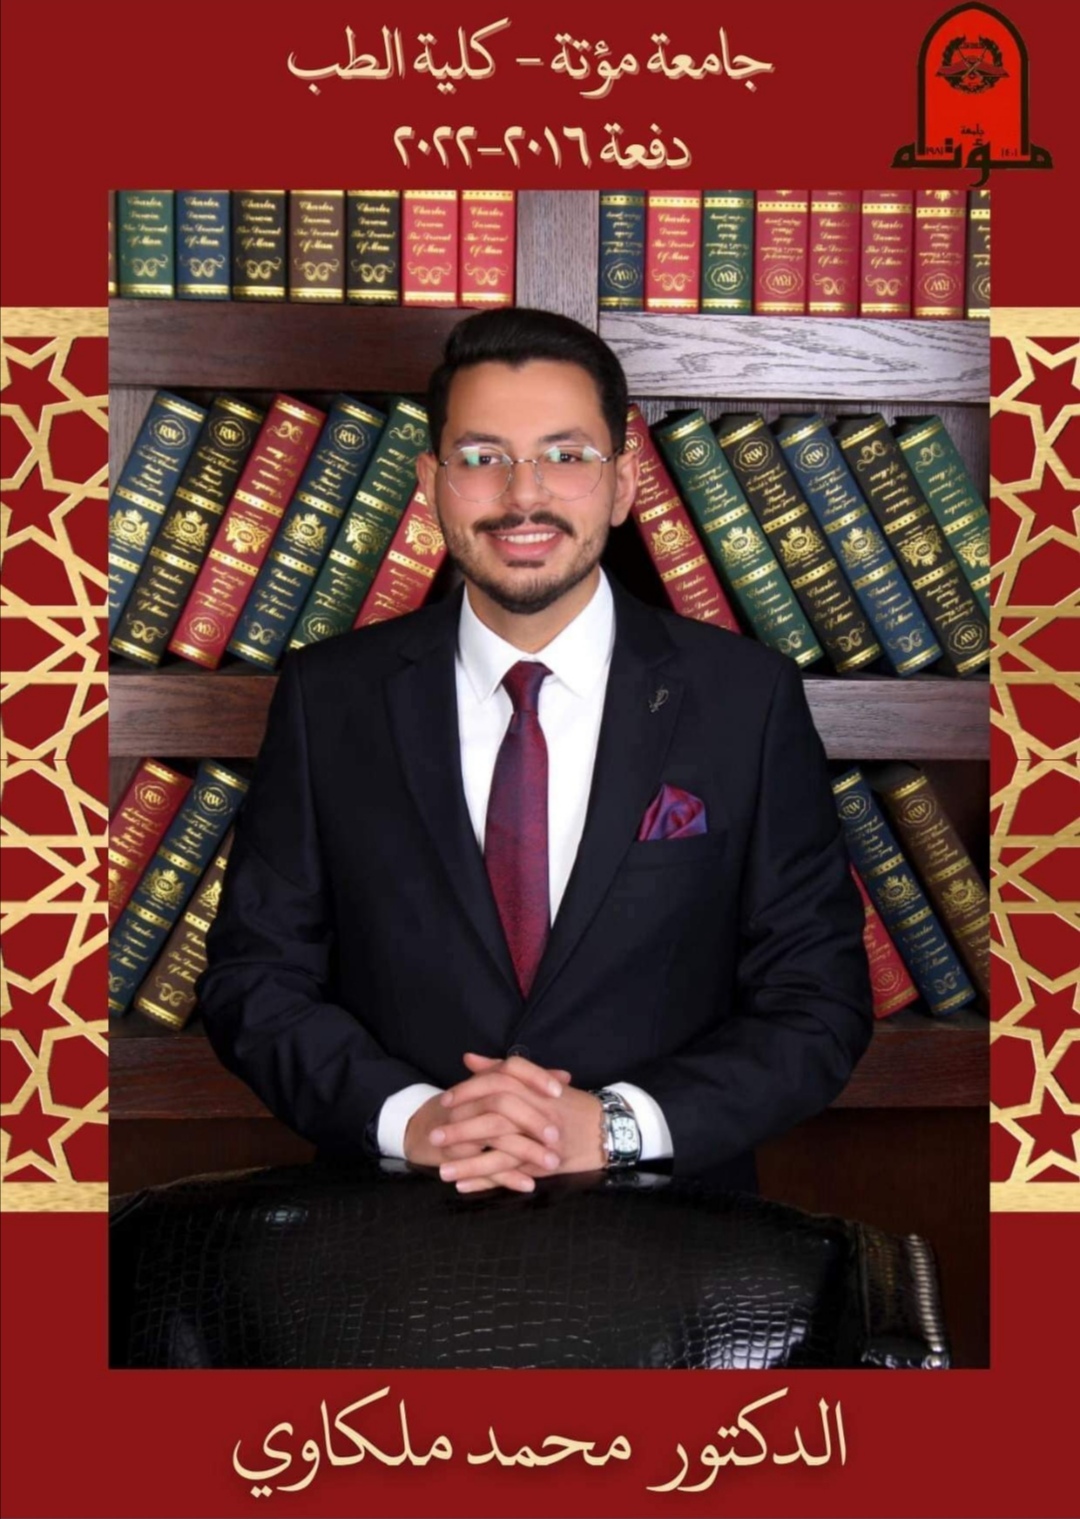 الدكتور محمد زهاء عبدالله الملكاوي مبارج التخرج 